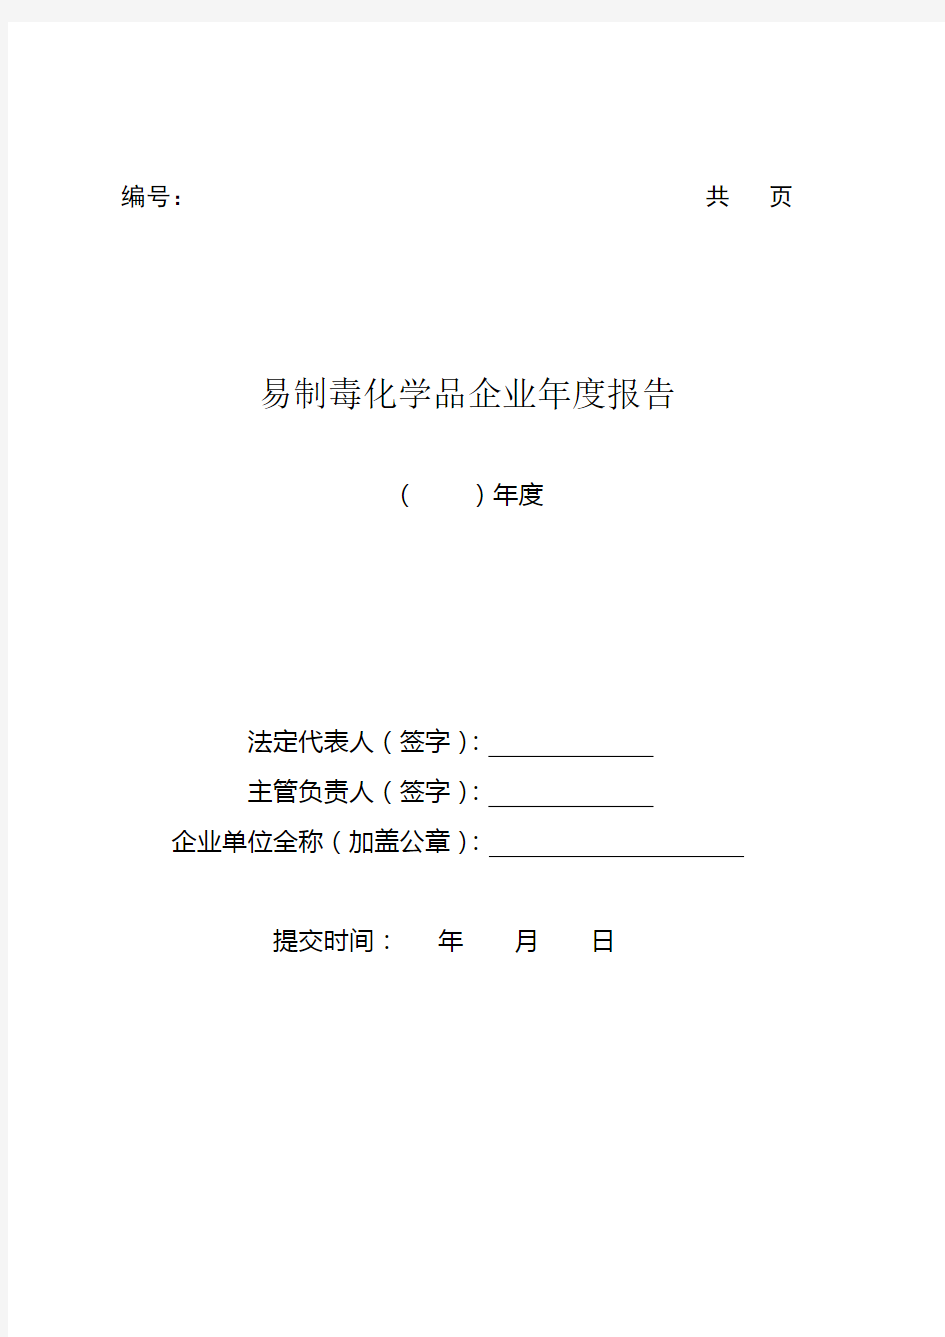 黑龙江省易制毒化学品企业年度报告样表